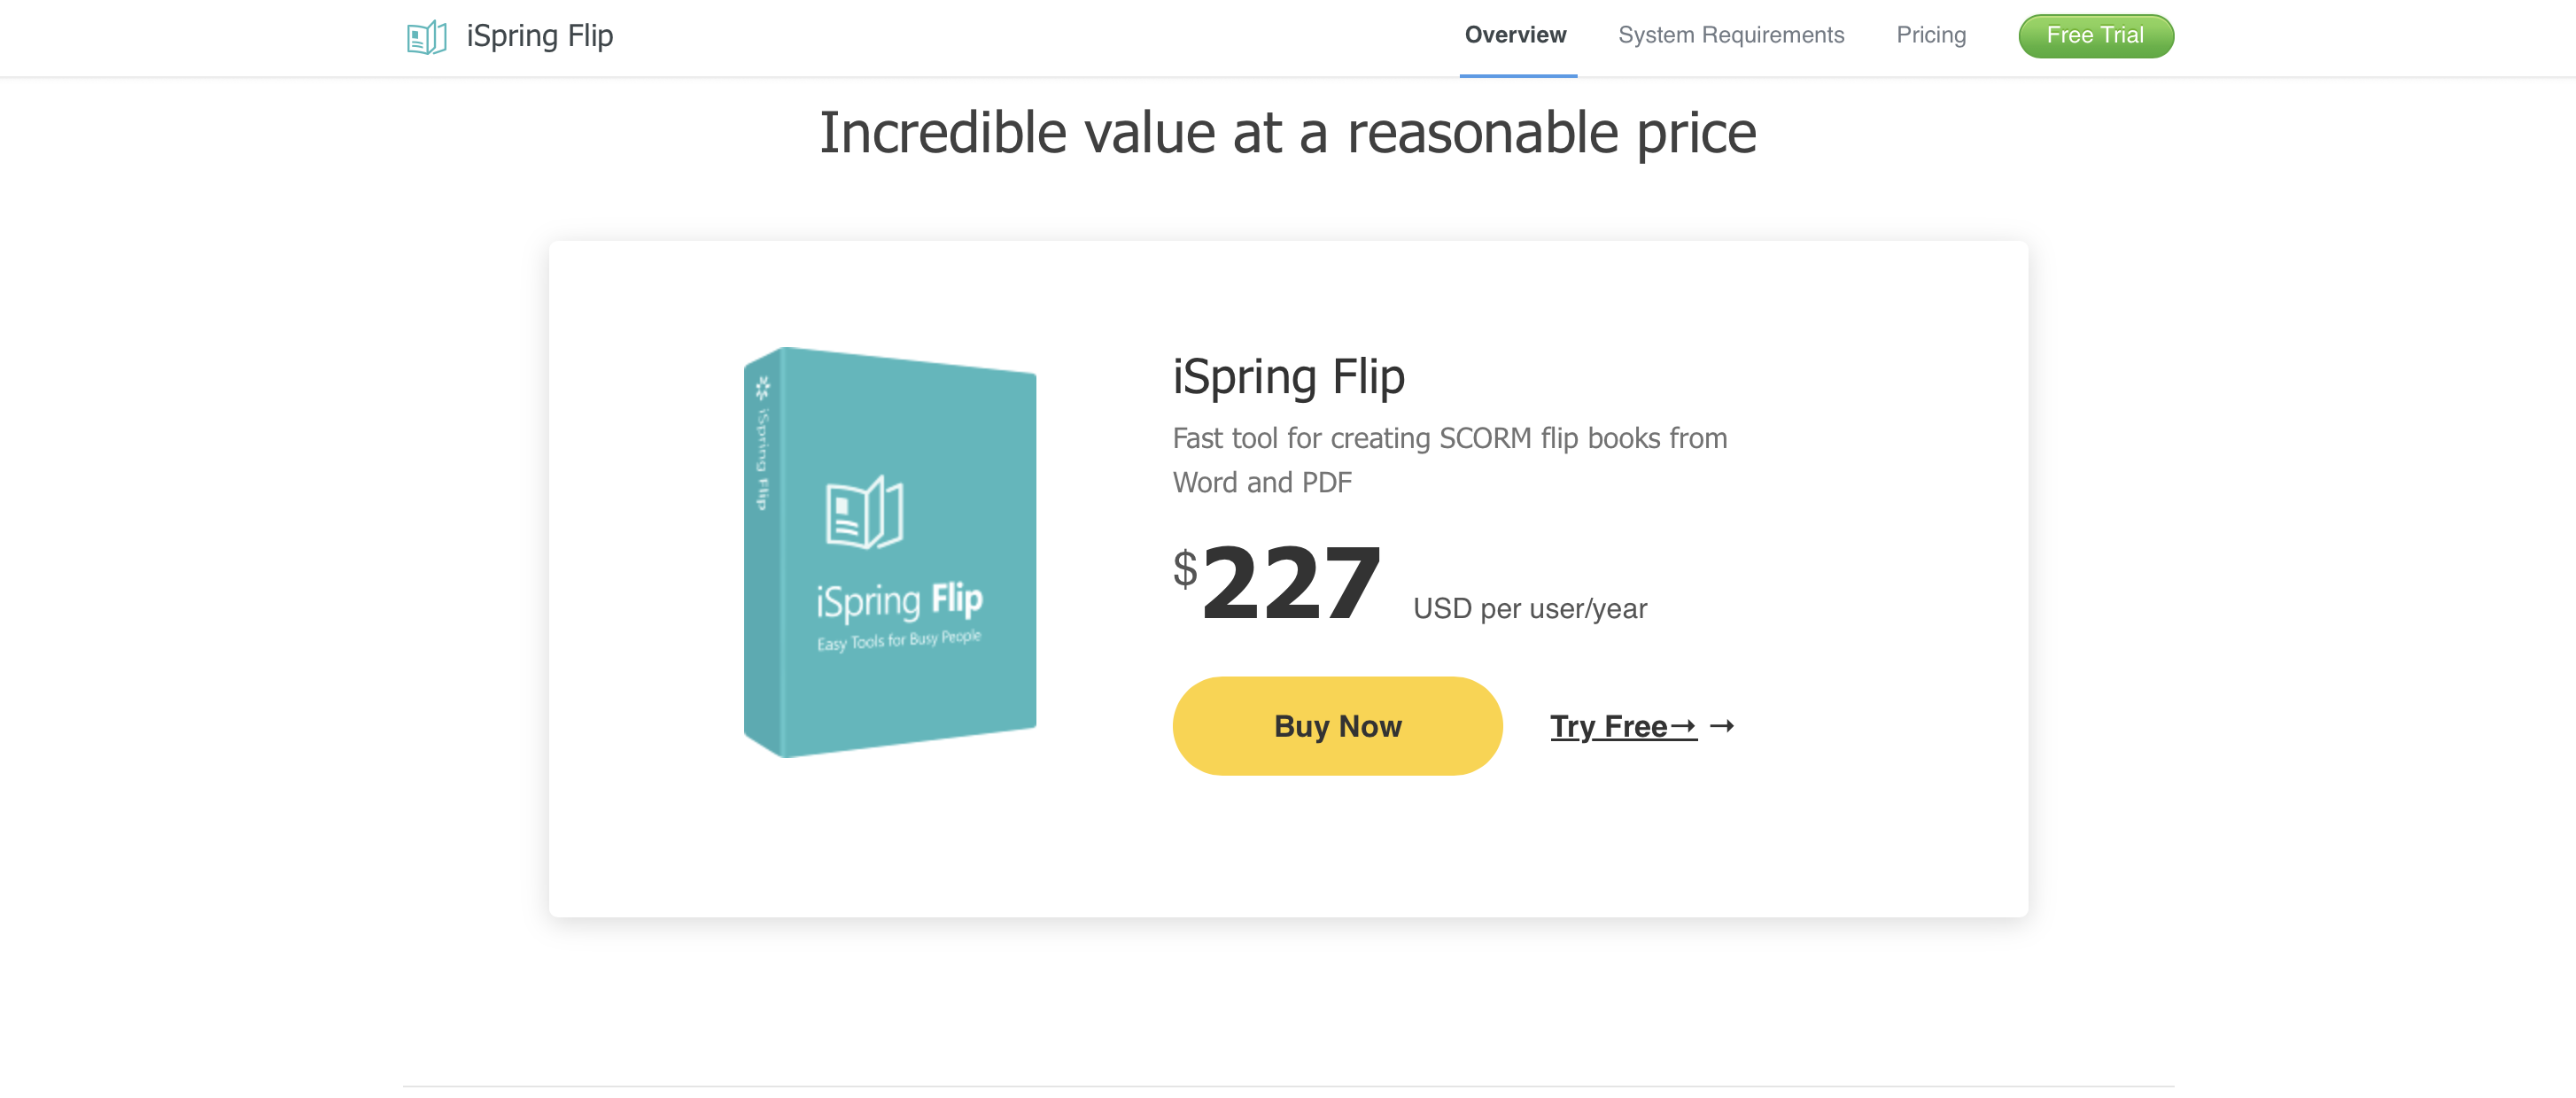 ISpring Flip Pricing